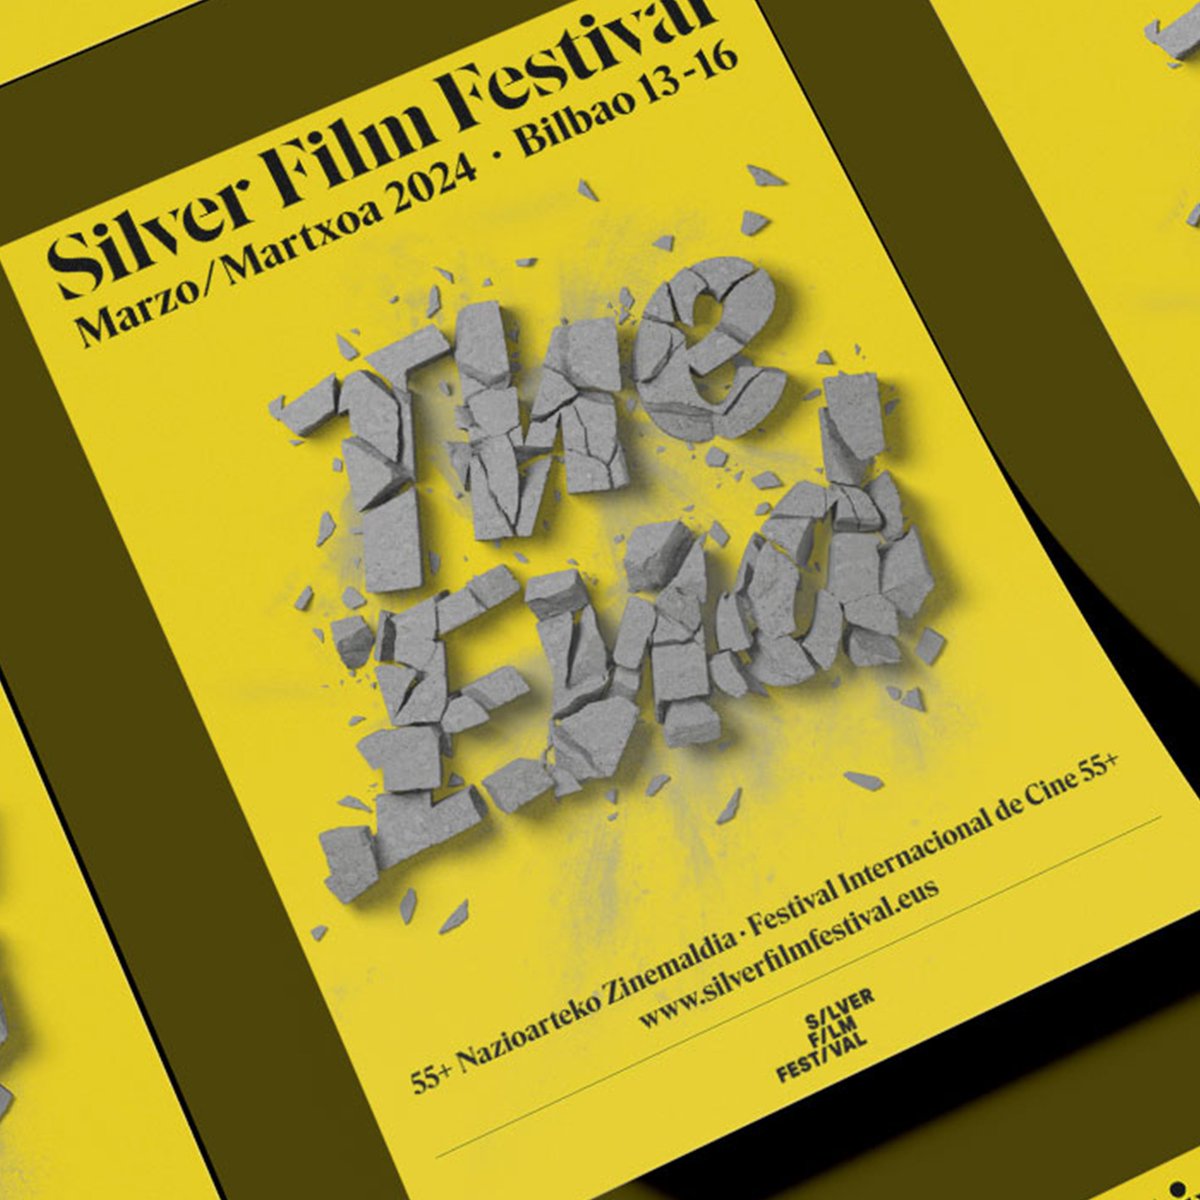 📆 Silver Film Festival se celebrará en #bilbao entre los días 11 y 16 de marzo

#silverfilmfestival #SFF #SFF2024 #silverfilmfestival2024